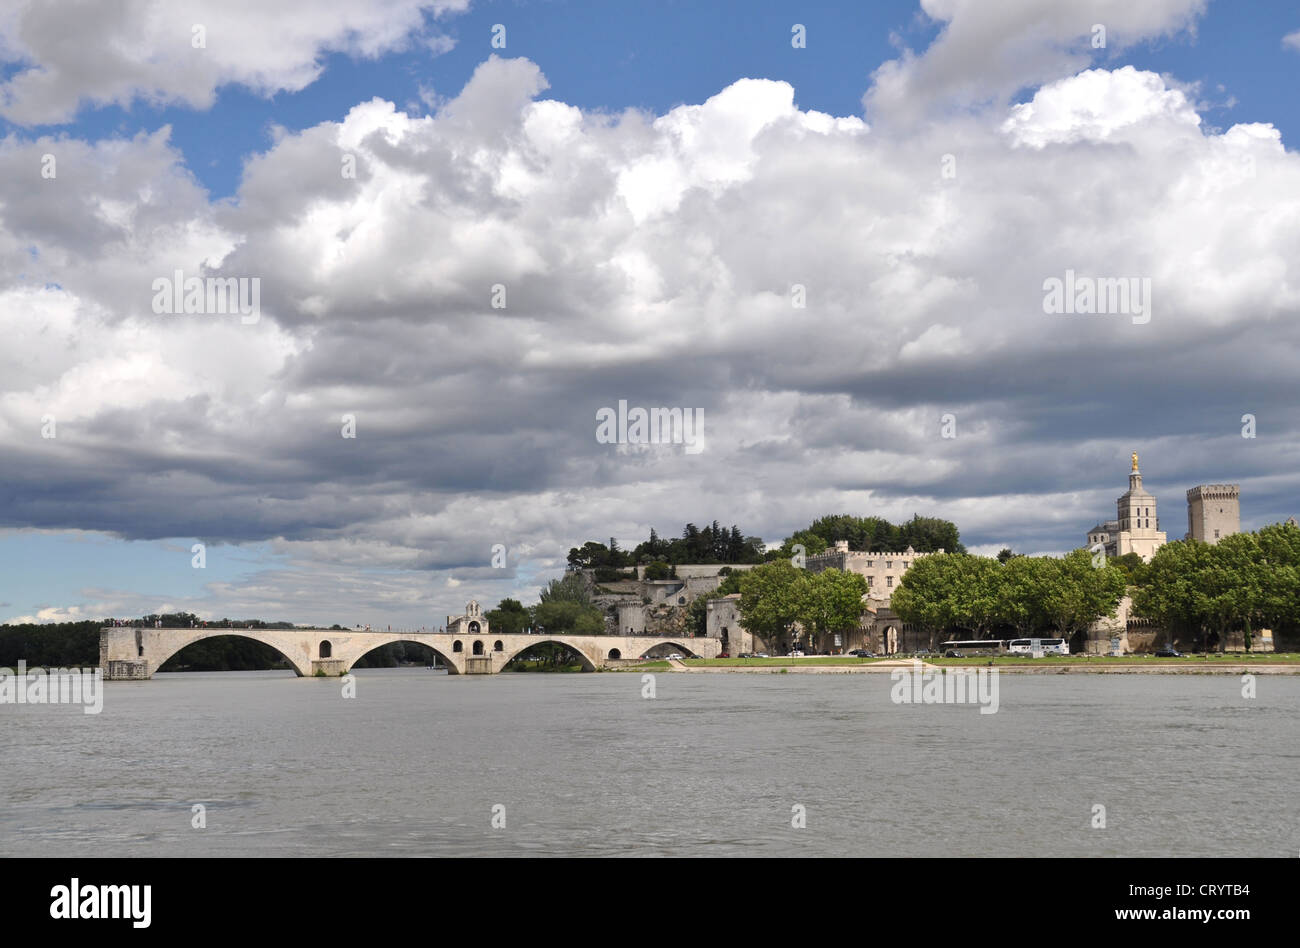 Pont d'Avignon and Palais des Papes, Avignon, Provence, France Stock Photo